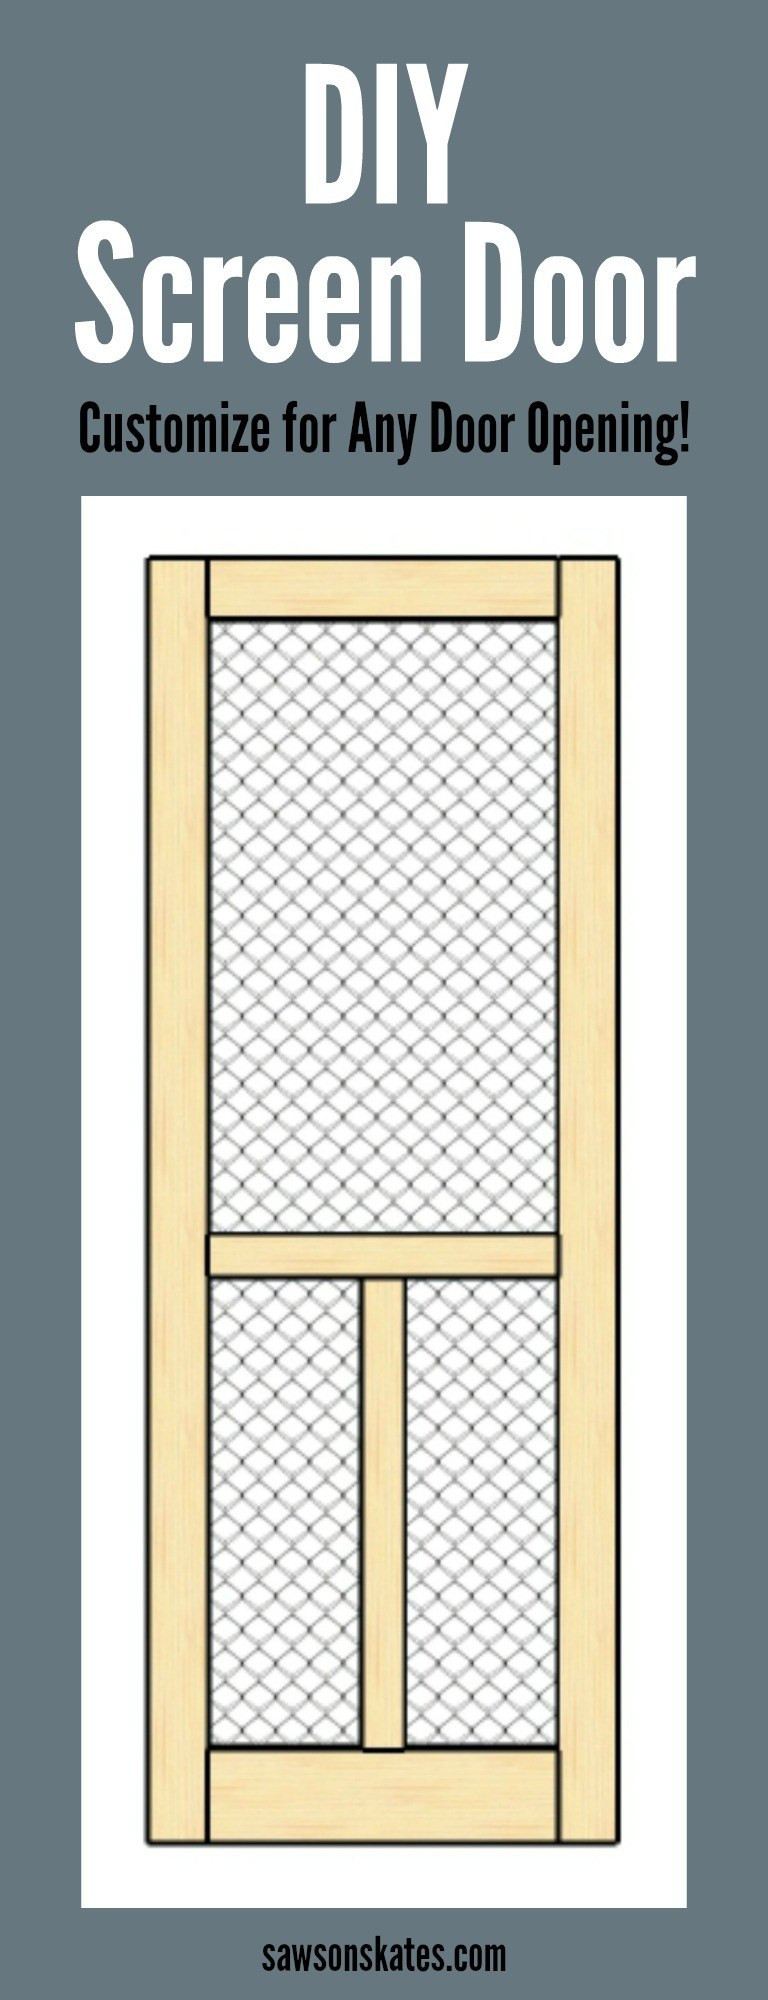 Best ideas about DIY Screen Door Kit
. Save or Pin DIY Wood Screen Door Now.